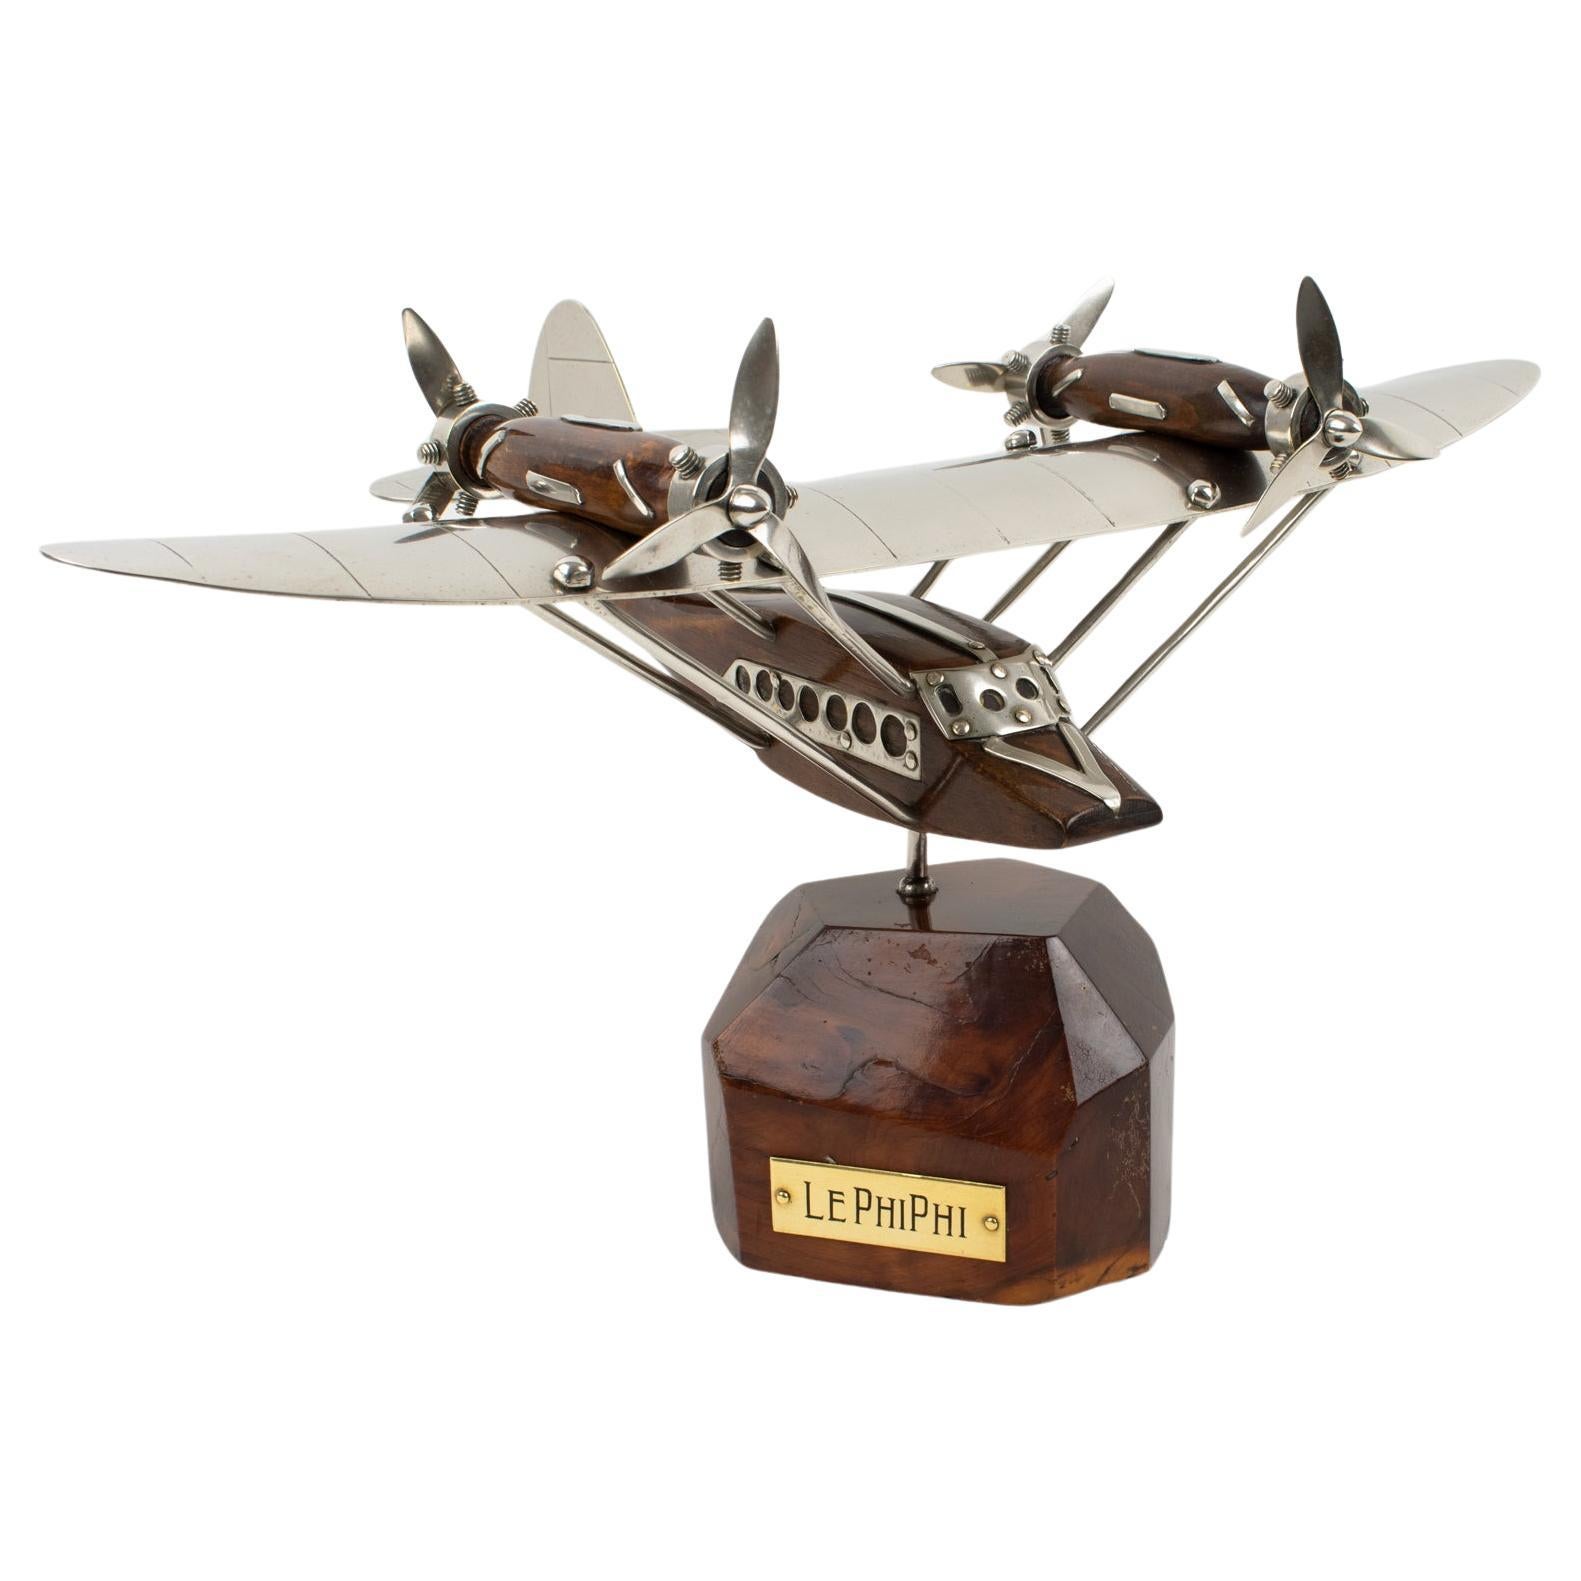 Art-Déco-Flugzeug aus Holz und Chrom, SeaPlane- Aviation-Modell, Frankreich 1940er Jahre